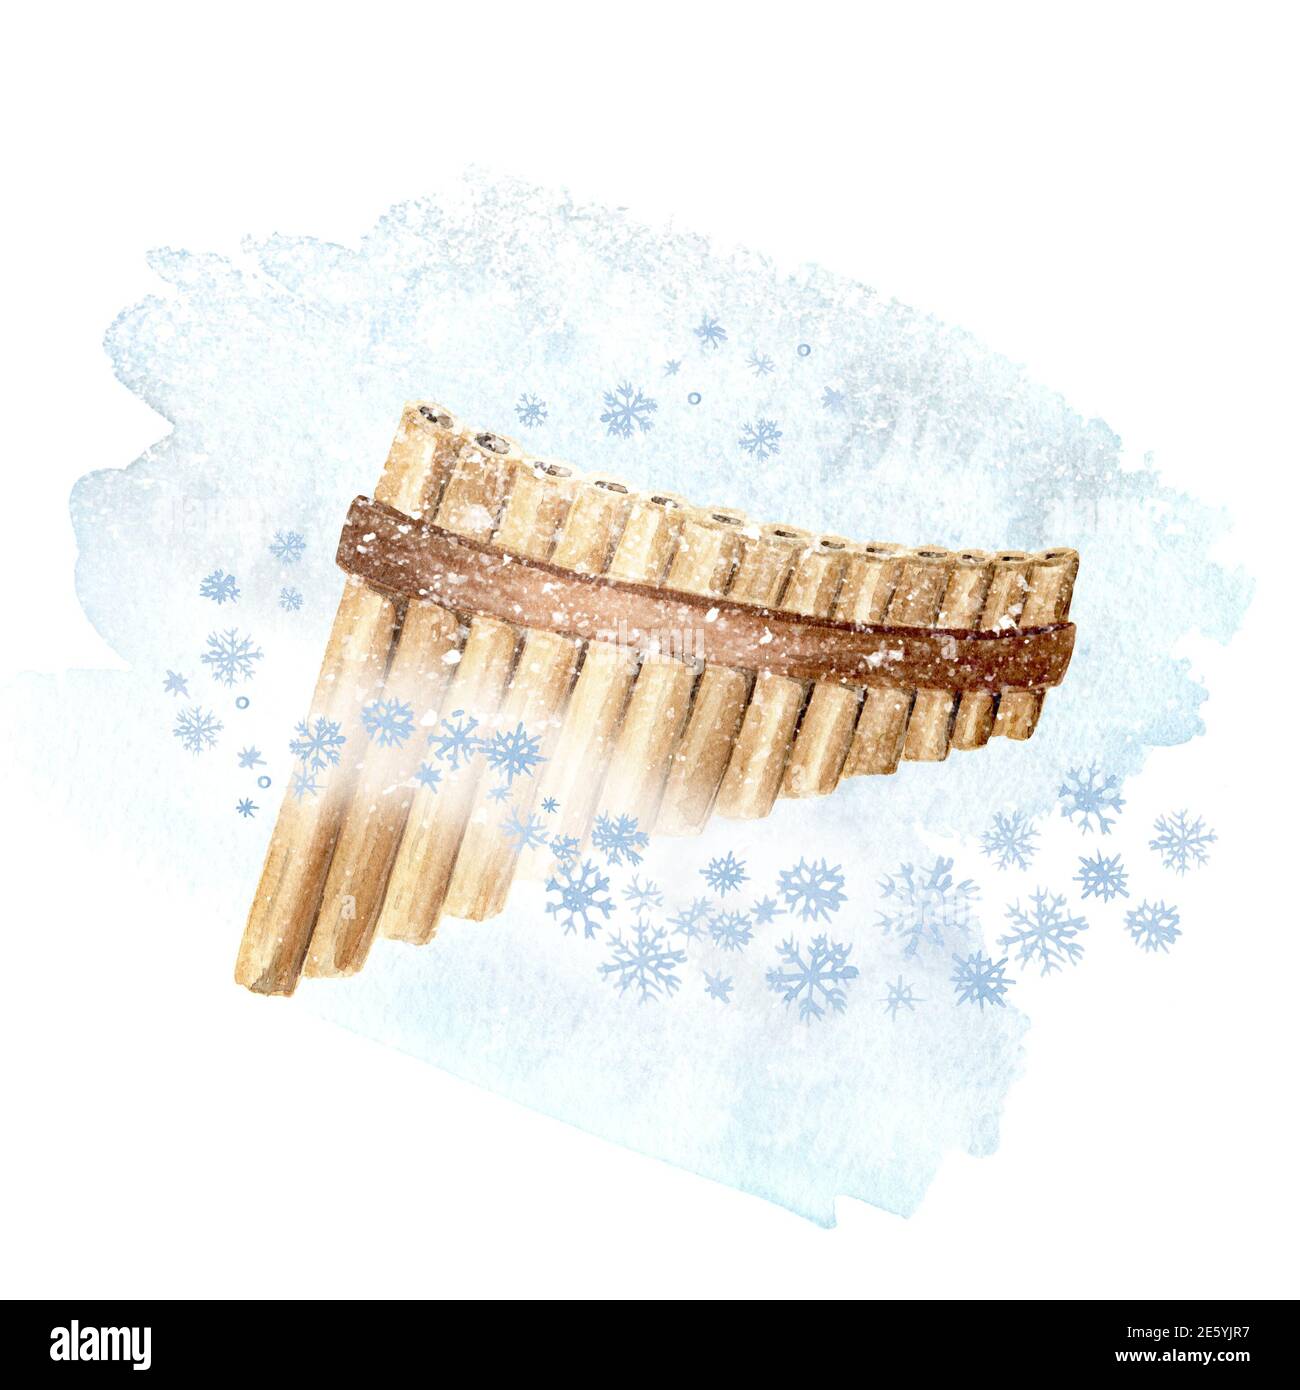 Flauta de pan de madera o pipa, instrumentos de viento Musical y copos de  nieve. Concepto de canción de invierno. Ilustración de acuarela dibujada a  mano aislada sobre fondo blanco Fotografía de